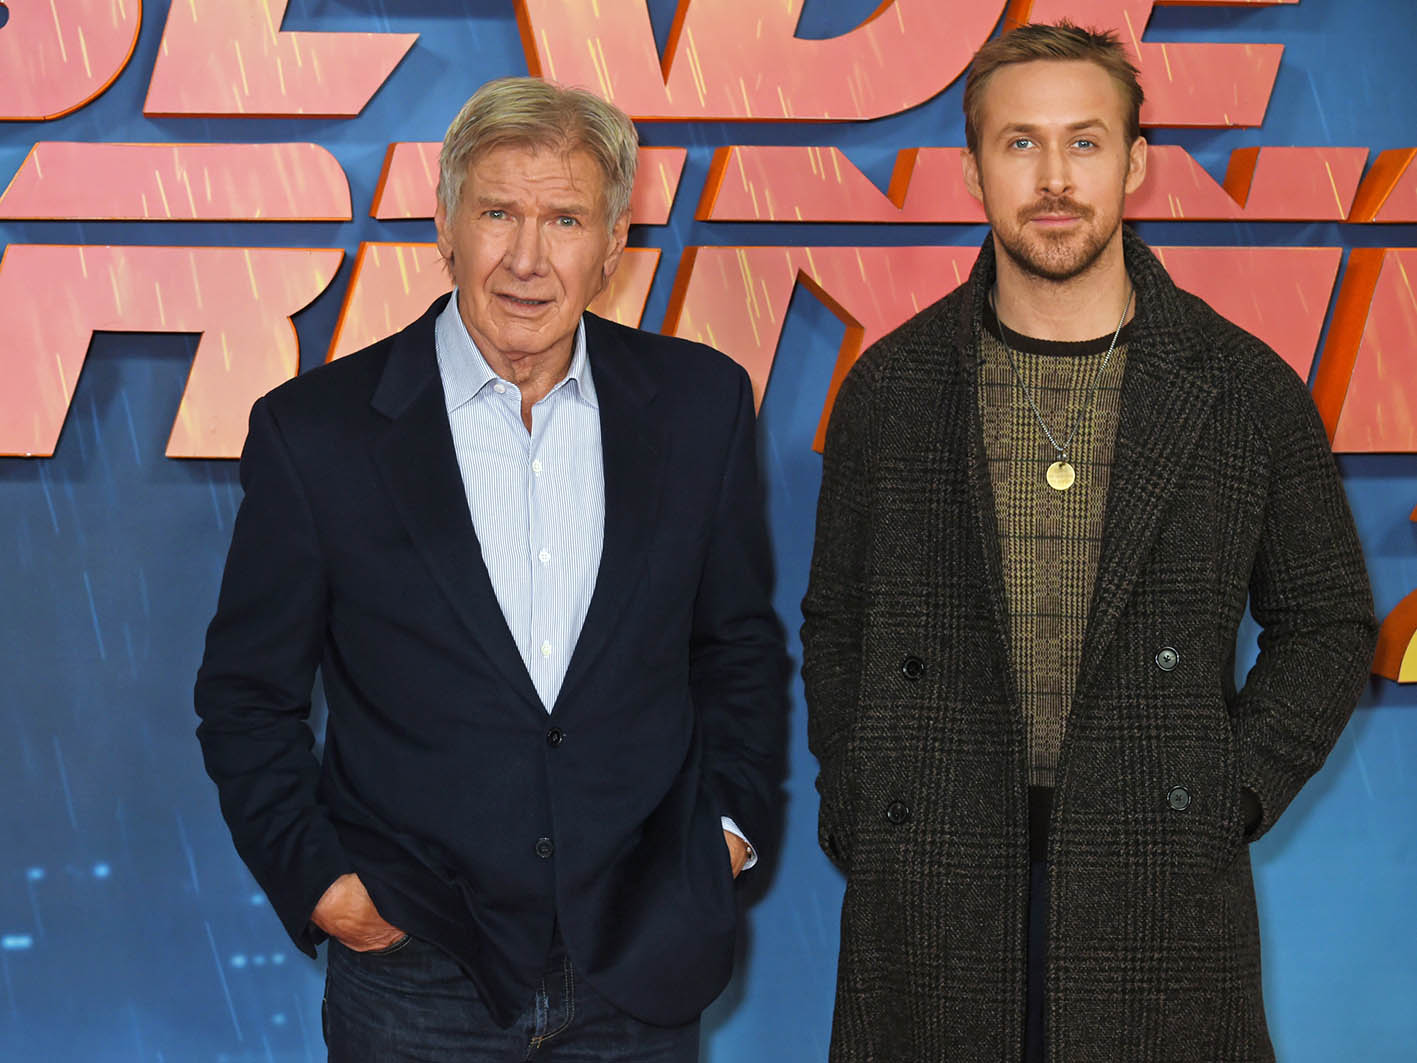 Ο Harrison Ford και ο Ryan Gosling στην εκδήλωση για την ταινία "Blade Runner 2049" στις 21 Σεπτεμβρίου 2017 στο Λονδίνο.